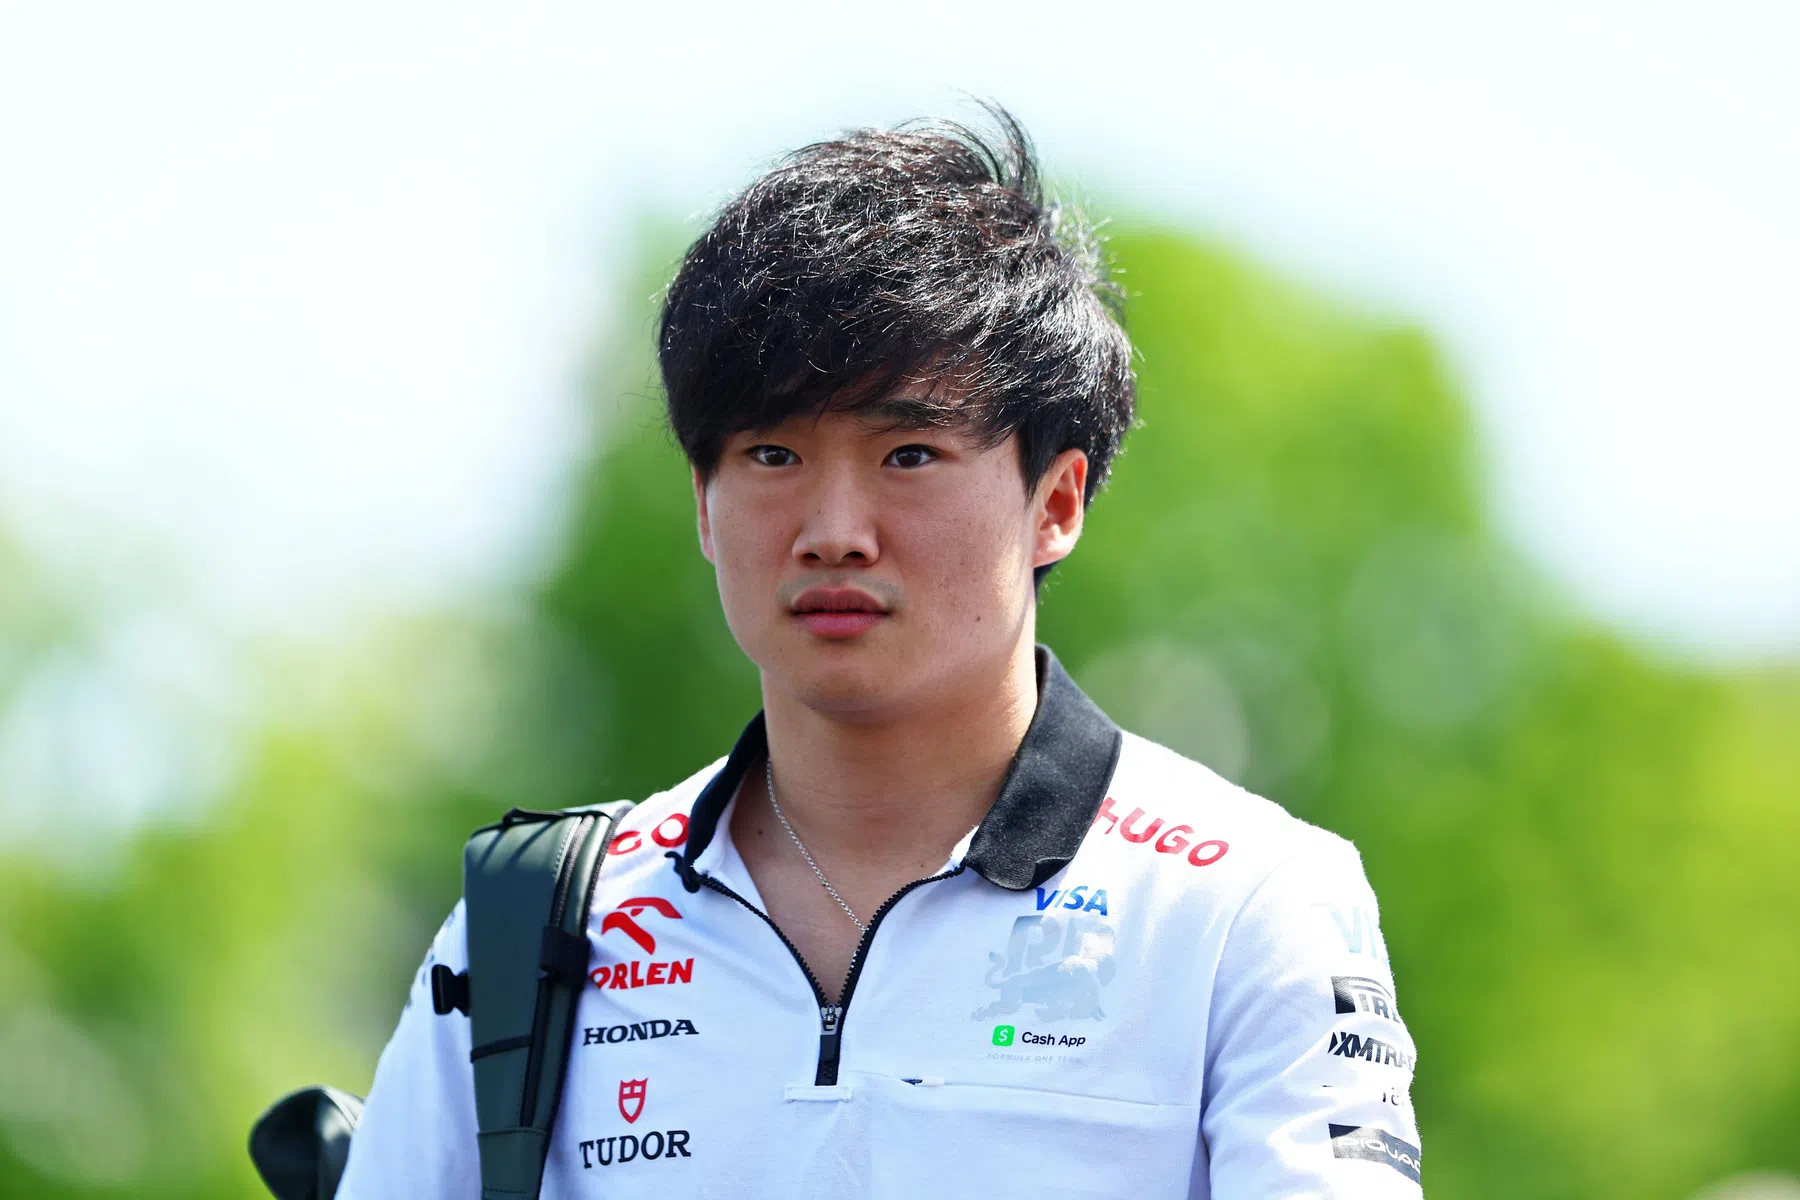 La FIA infligge una pesante multa a Tsunoda per aver bestemmiato